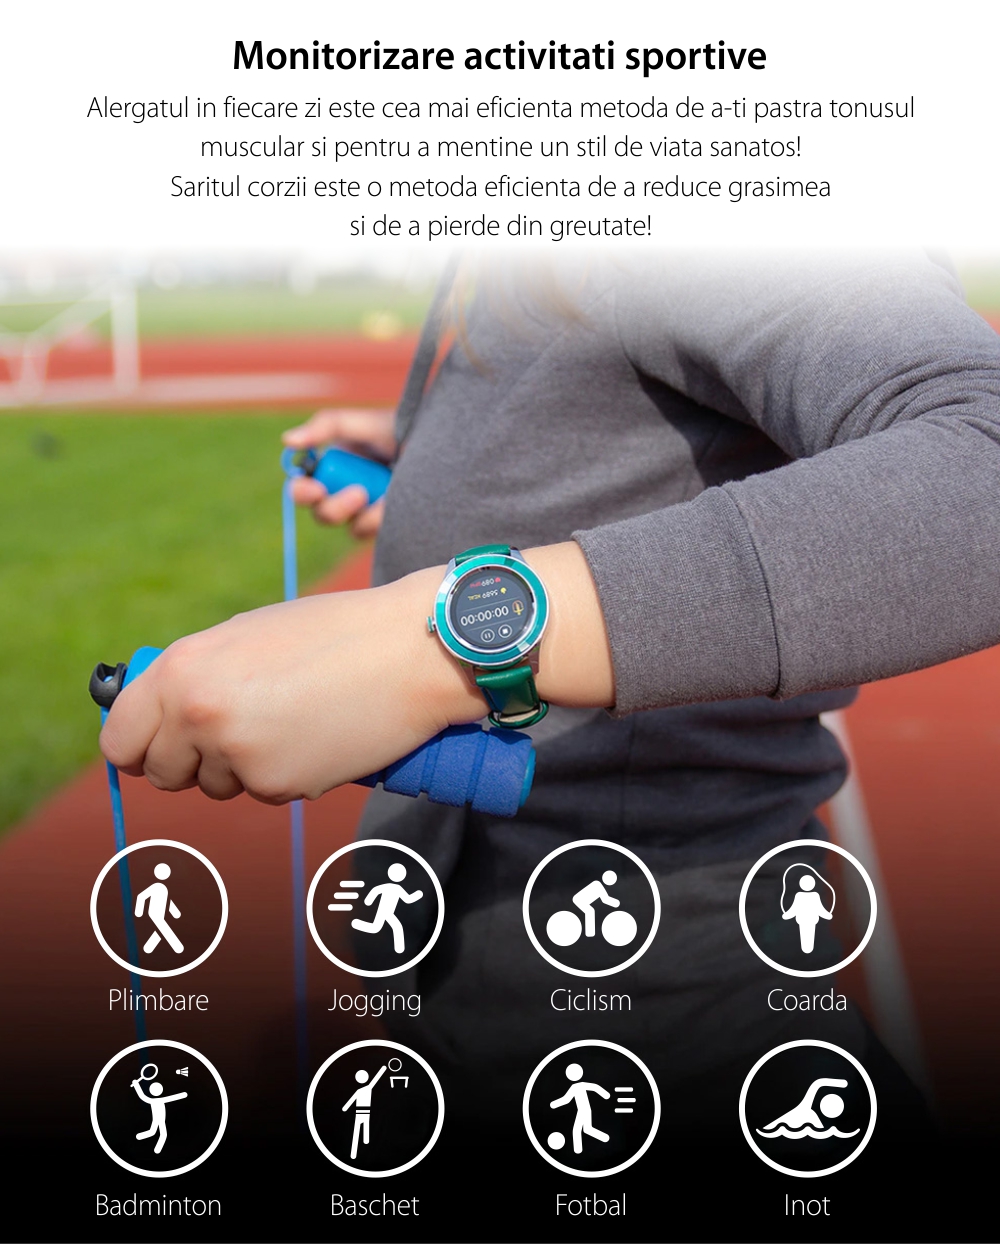 Ceas Smartwatch TKY-S09, Verde, Moduri sportive, Monitorizarea calitatii somnului, Ritm cardiac, Tensiune arteriala, Oxigen din sange